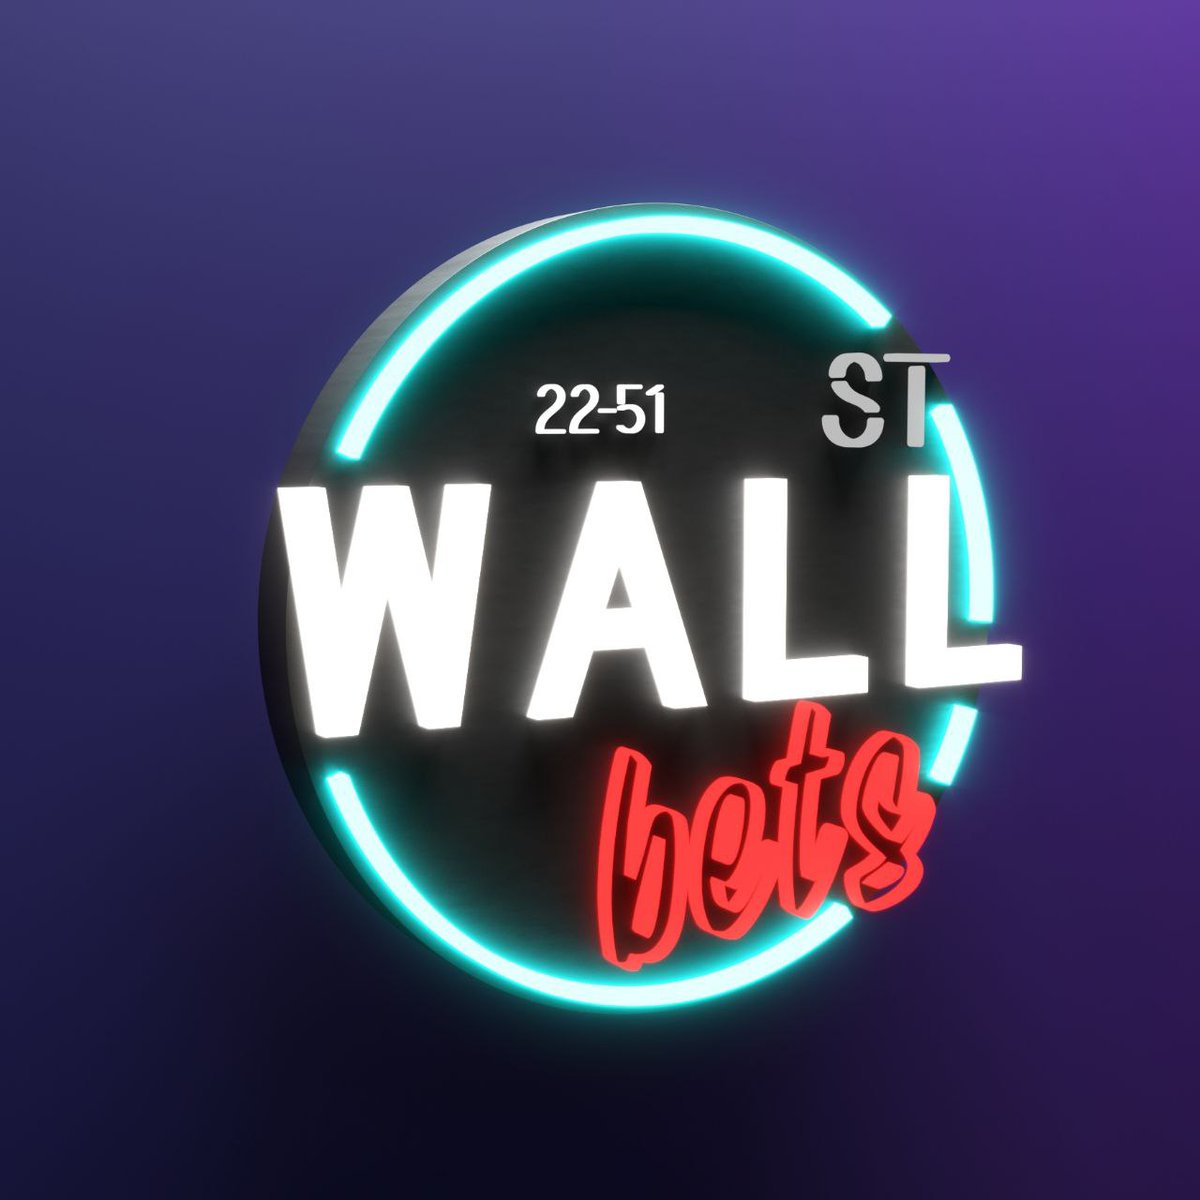 RT @wallstreetbets: Thanks @EvolvedPunks for this slick 3D WSB logo. Very talented artwork. https://t.co/EUrFaCbN0g